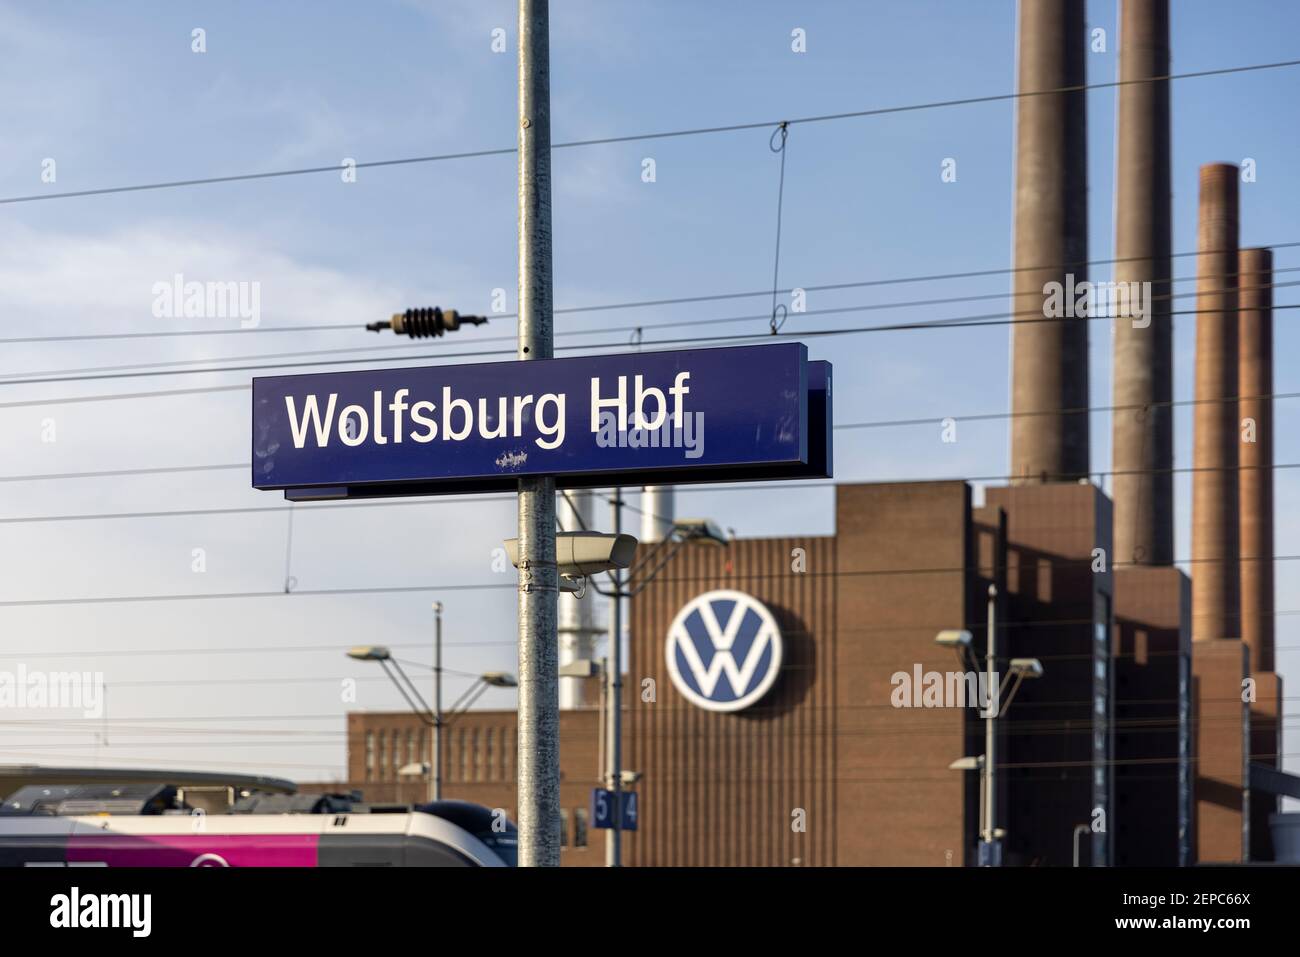 La gare de Wolfsburg Head est située à proximité de l'usine de voitures Volkswagen. Banque D'Images